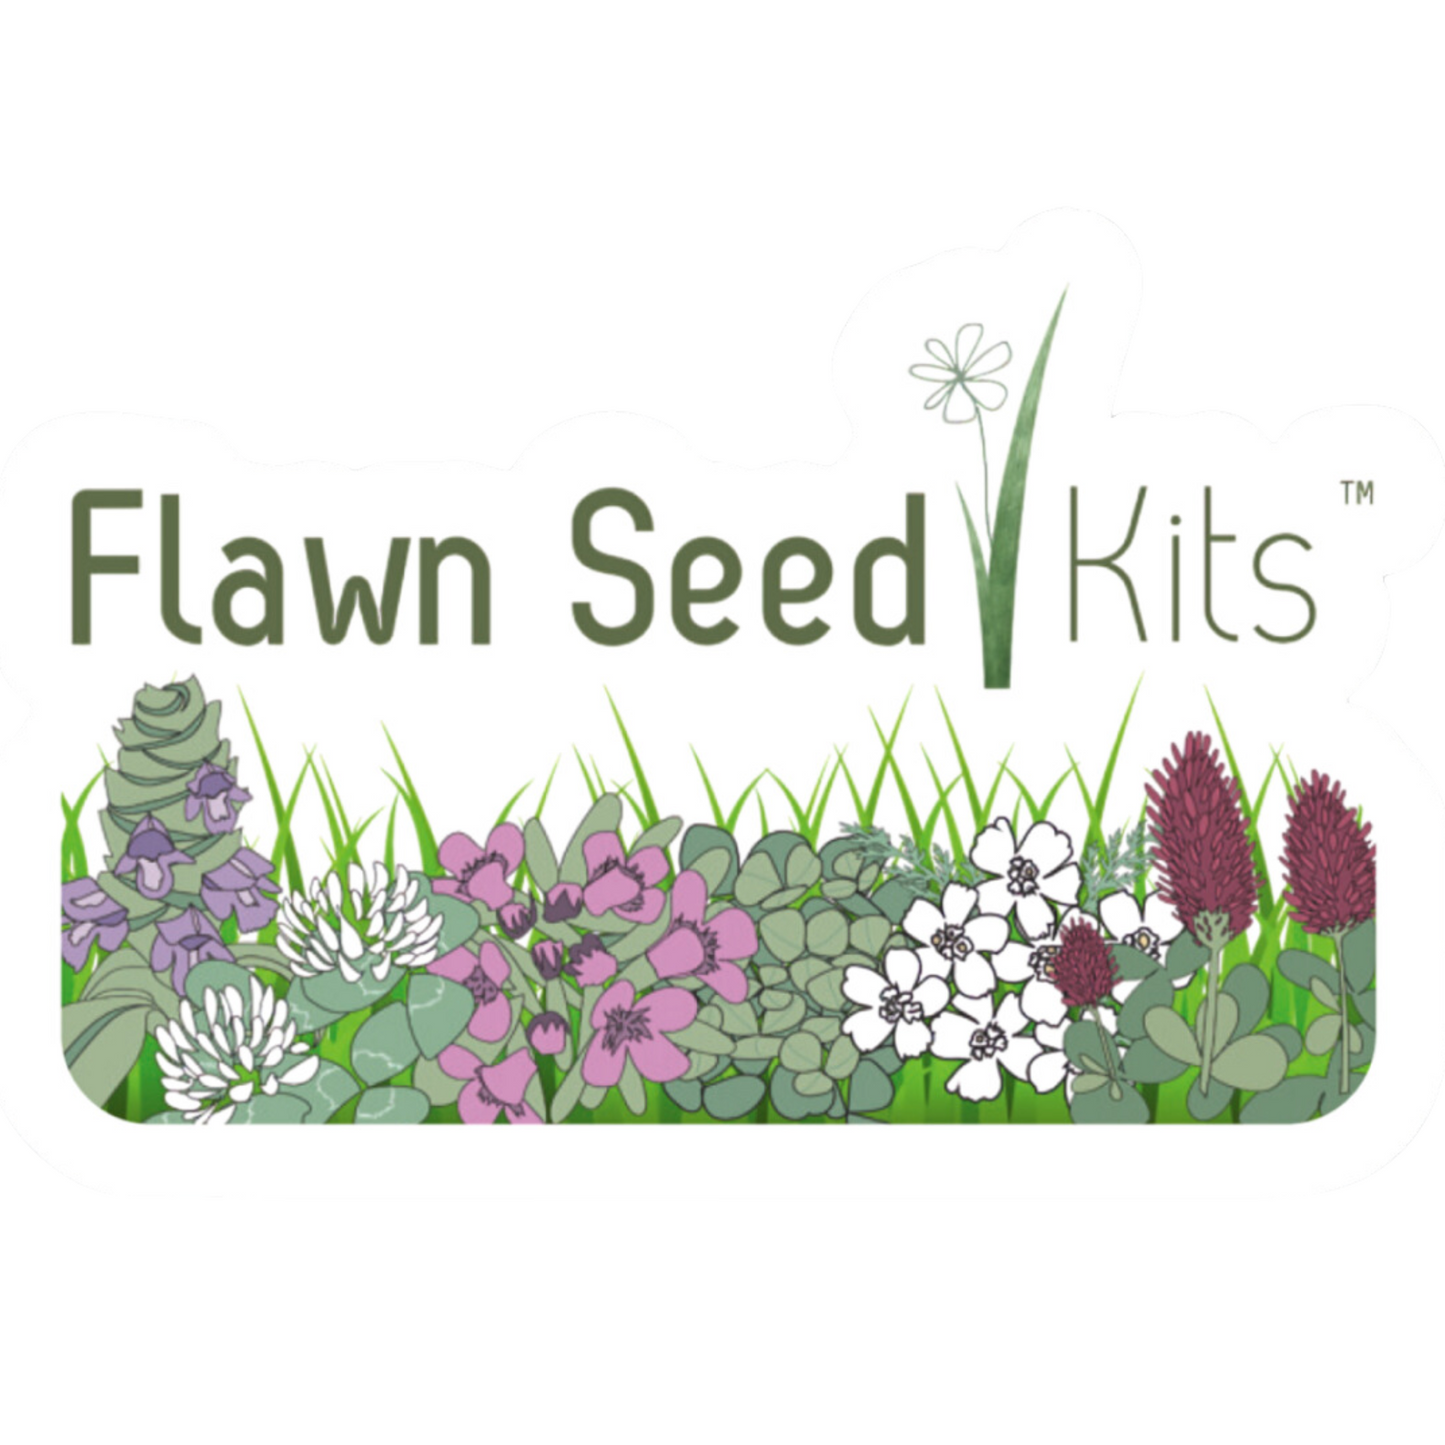 Flawn Seed Kits 2.5" Sticker